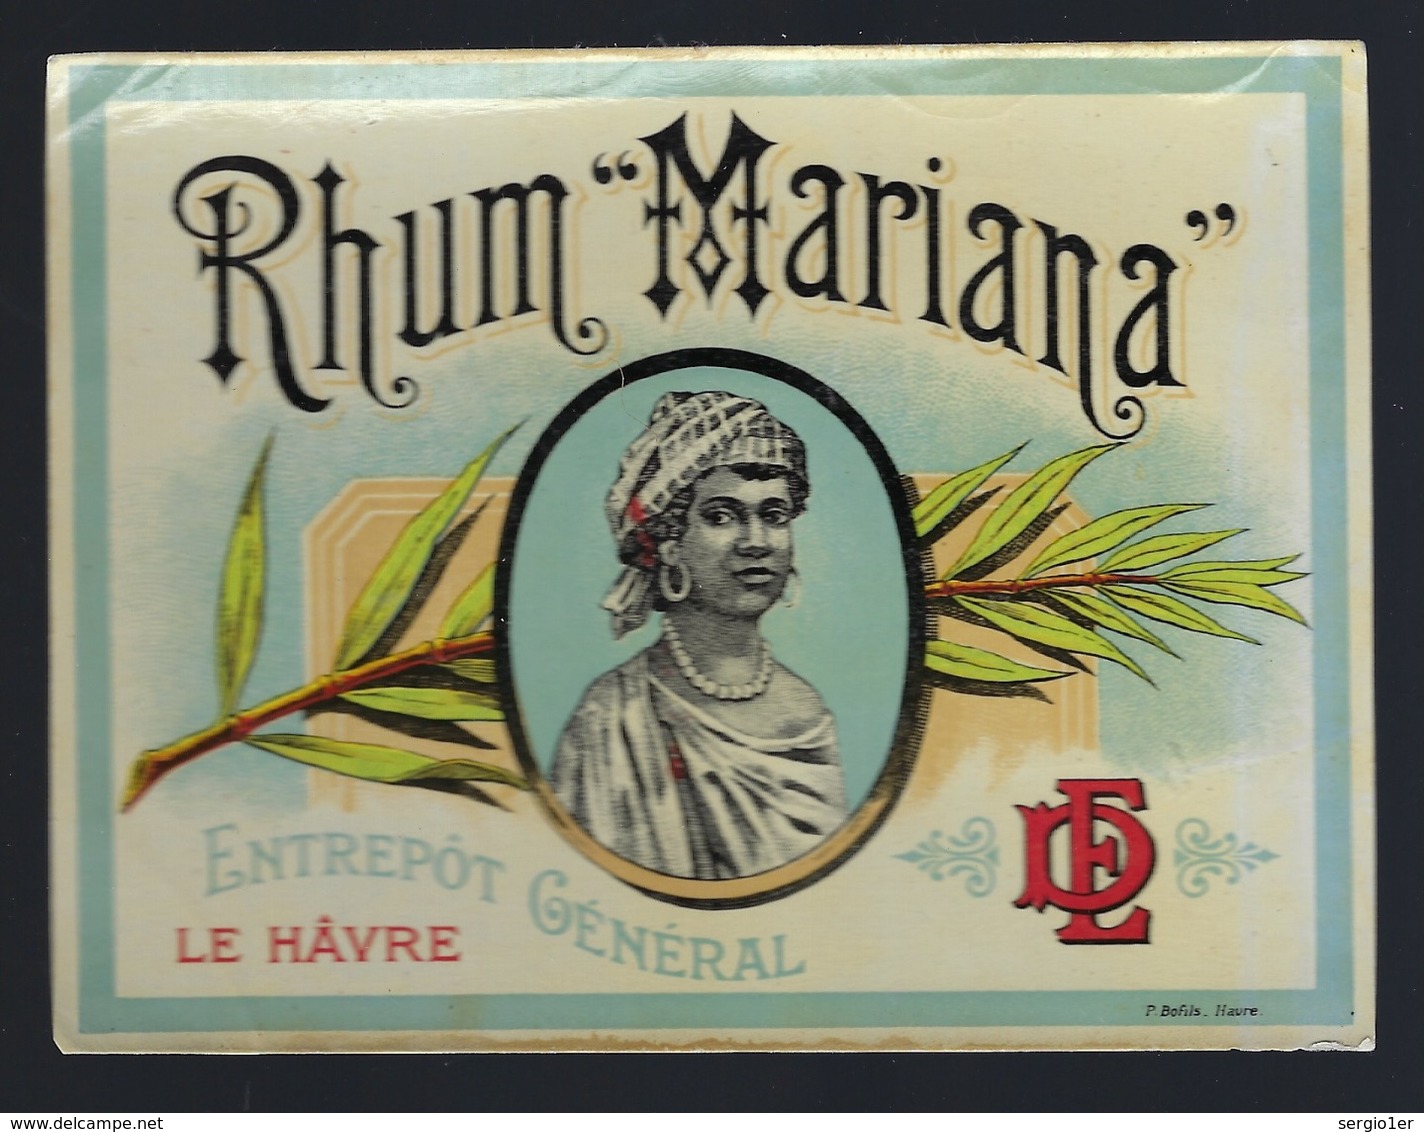 Ancienne étiquette Rhum   Mariana "DE" Zntrepôt Général Le Hâvre étiquette Vernie  "femme Coiffe" Superbe - Rhum